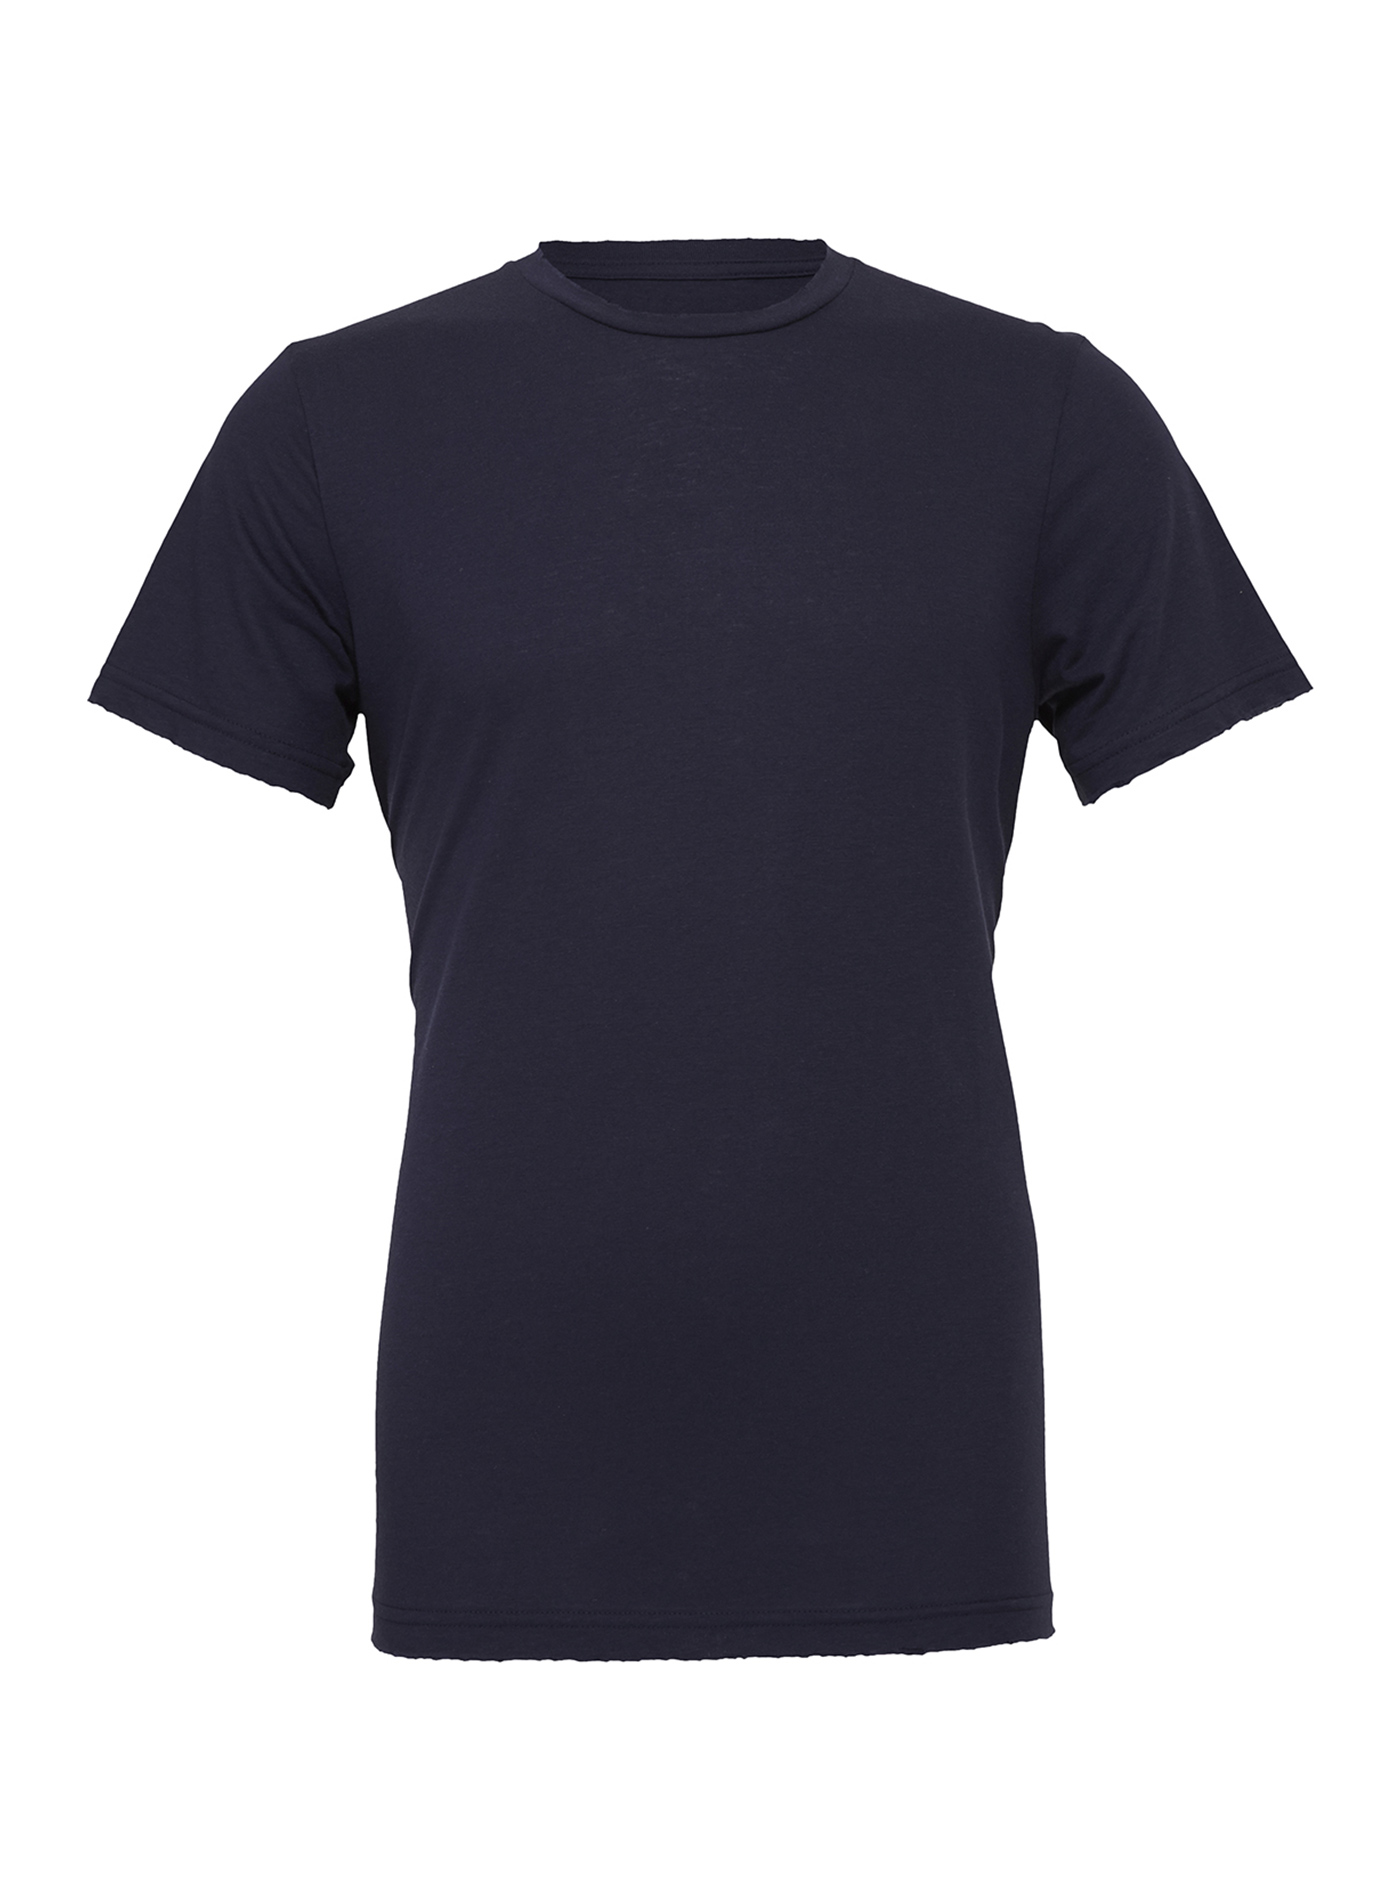 Unisex tričko Jersey - tmavě modrá S